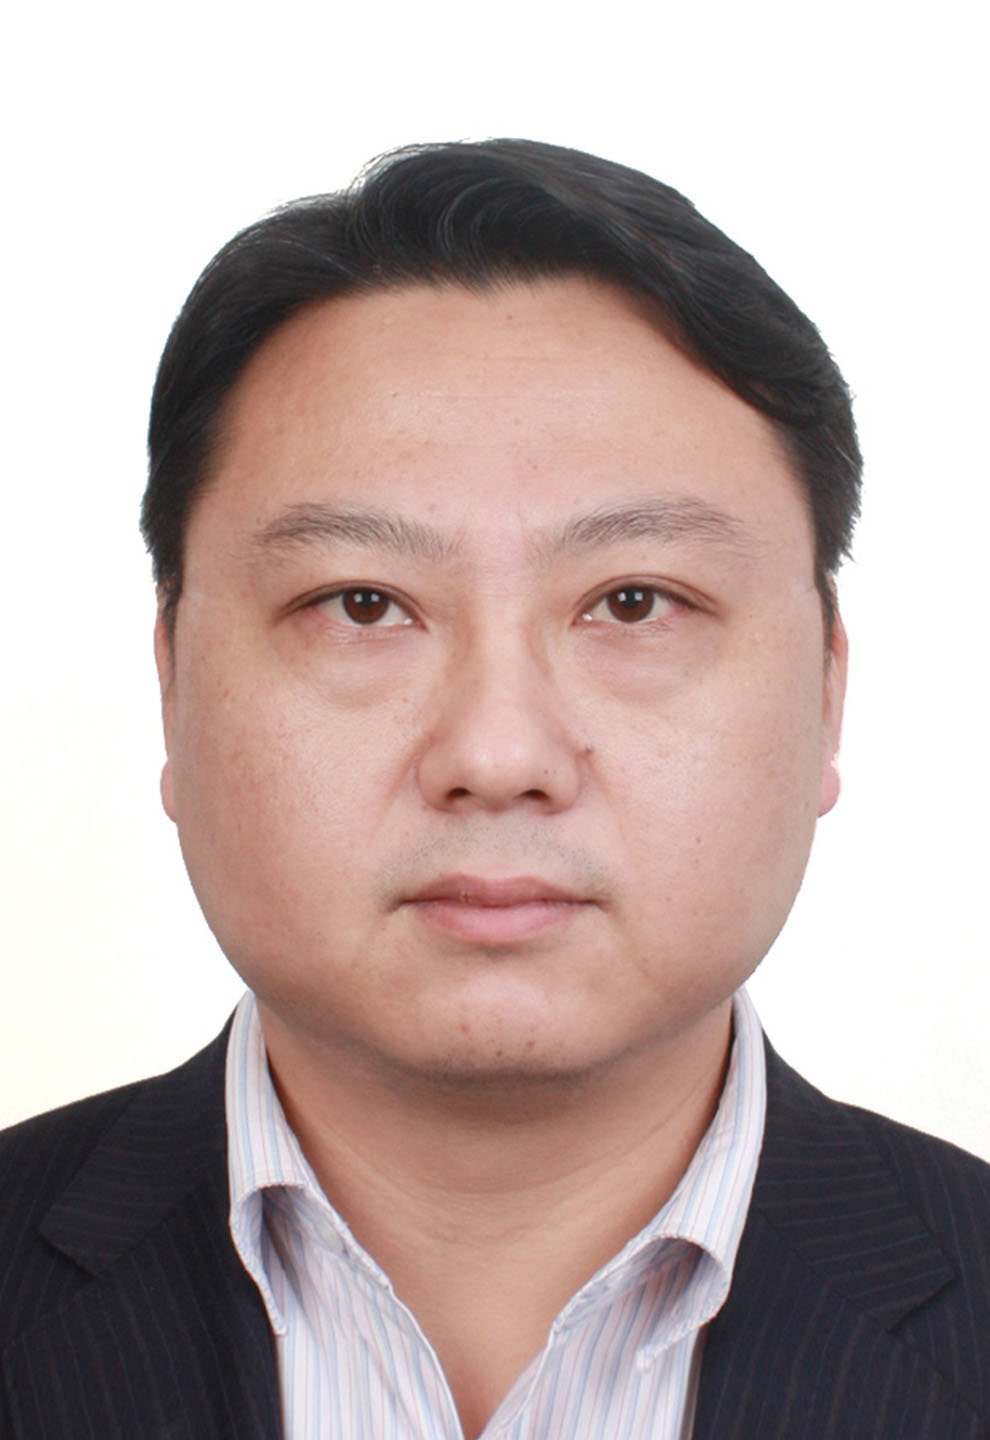 Mr Jiang Peng, director, CMC Business Development International Center